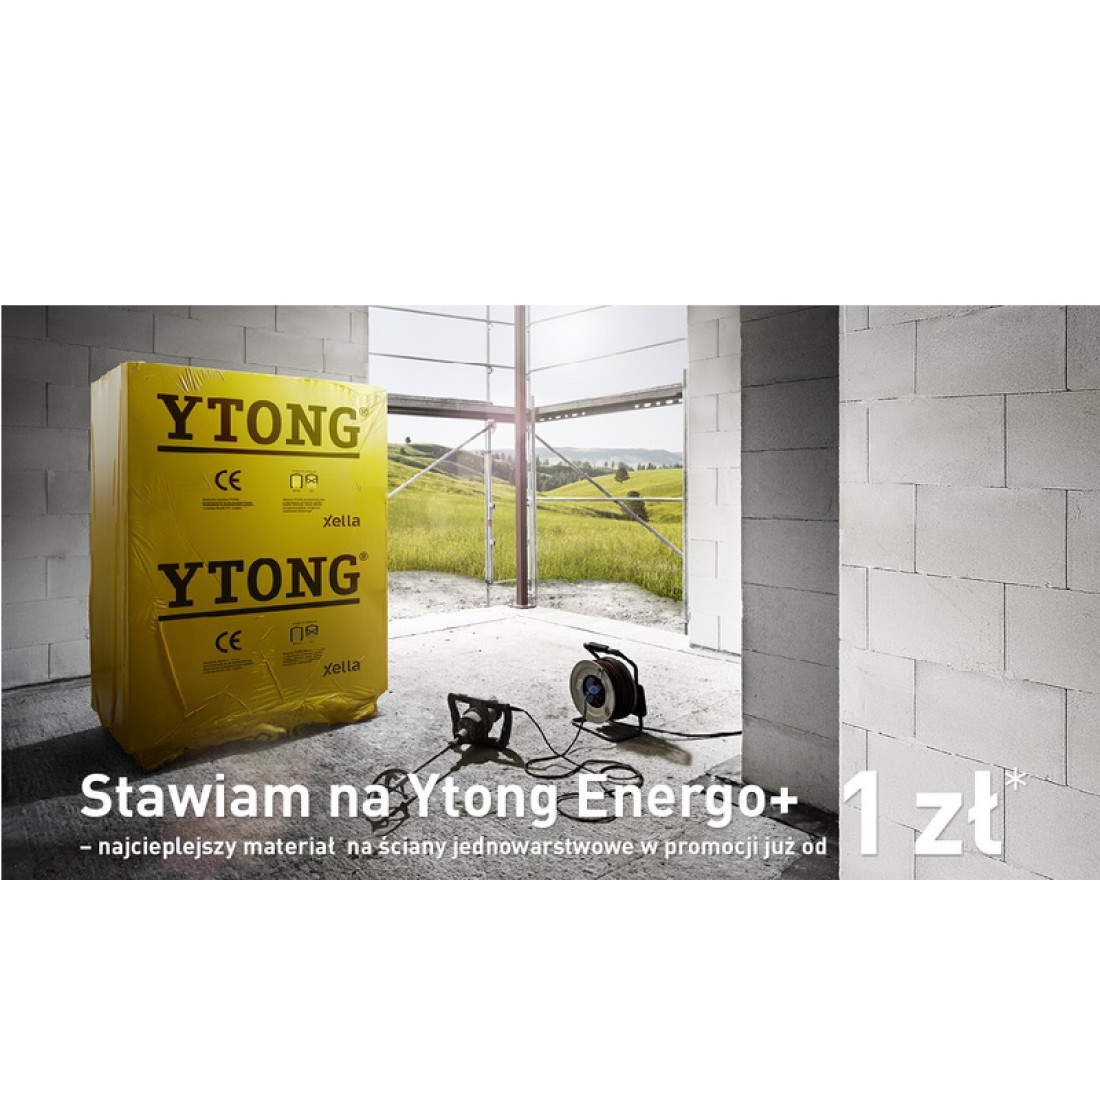 Ytong Energo+, najcieplejszy materiał na ściany jednowarstwowe, teraz w promocyjnej cenie